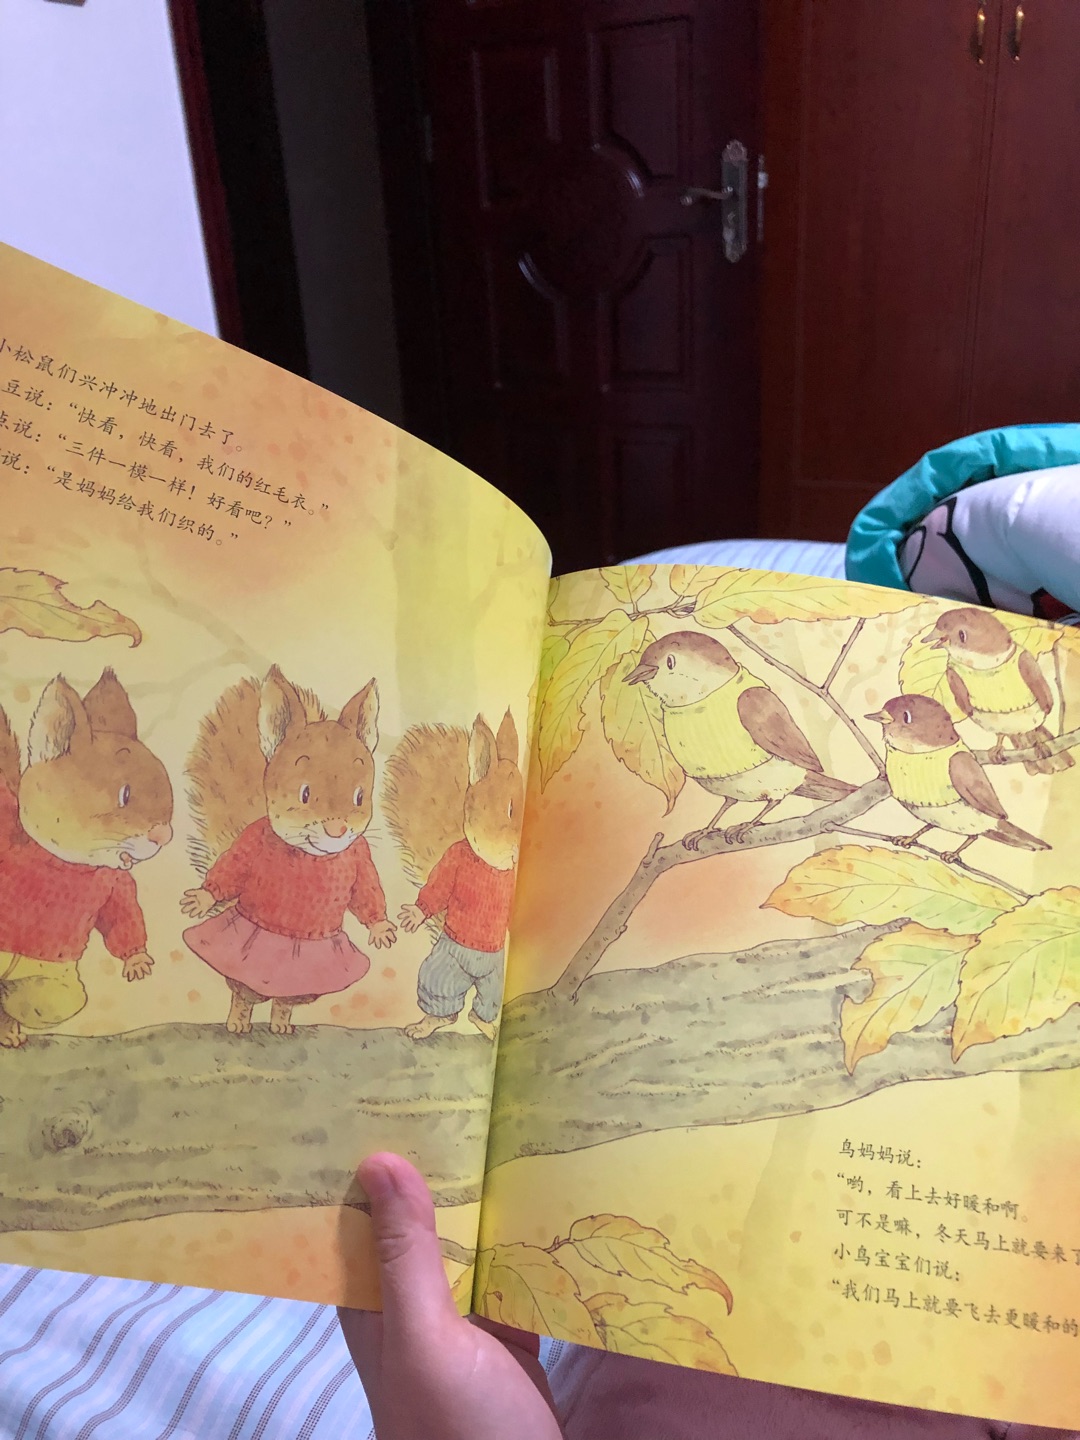 和七只小老鼠一样的风格，很温馨，画面文字都是暖暖的，很喜欢这样的童书，简单易懂，又有内容。